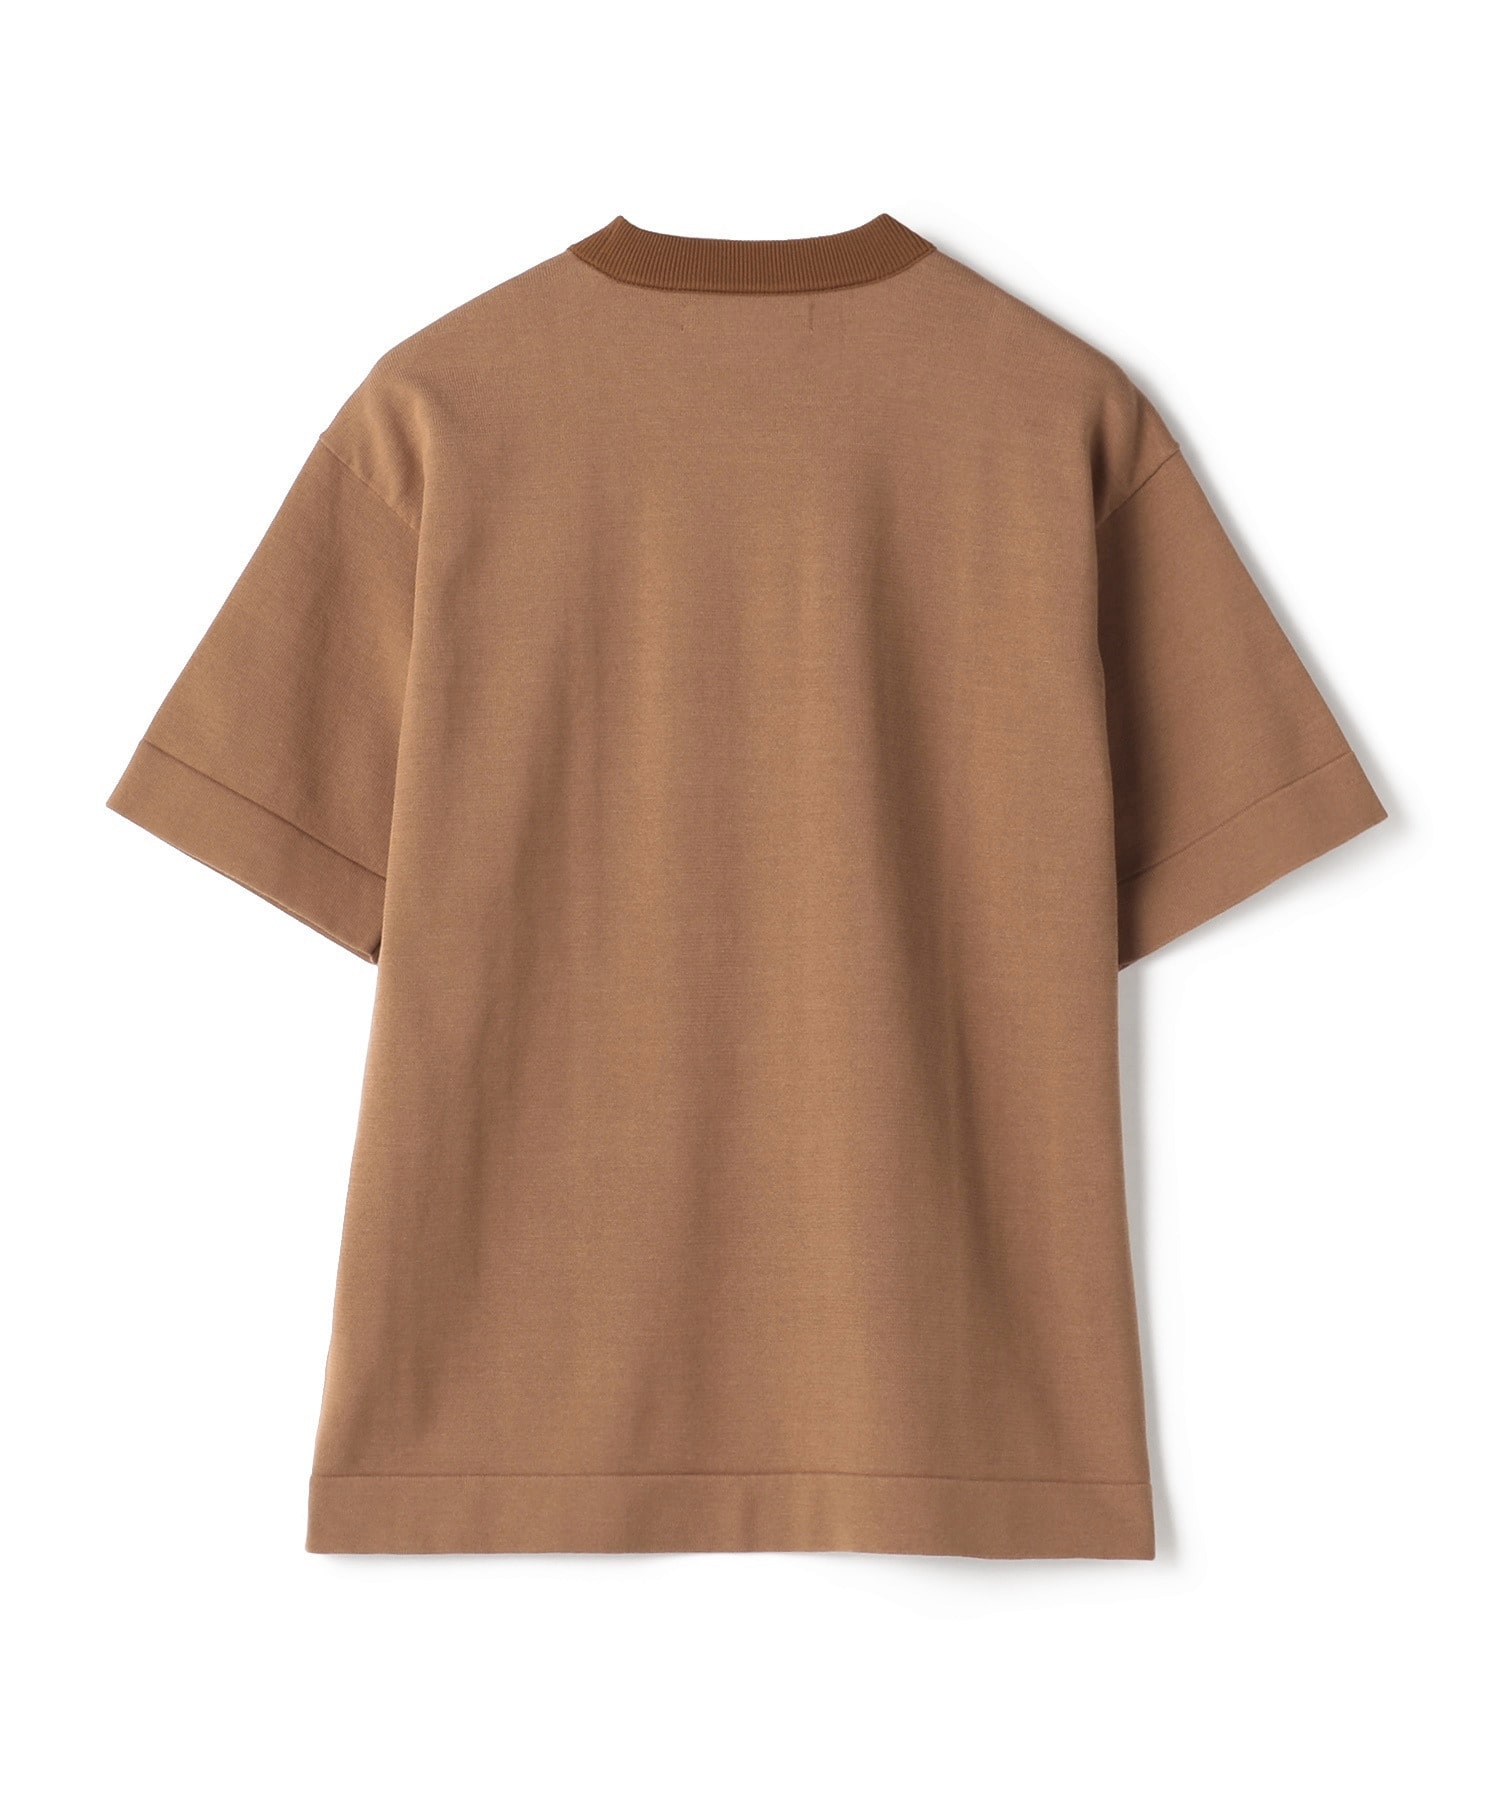 クルーネック半袖ニットTシャツ 詳細画像 ブラウン 2